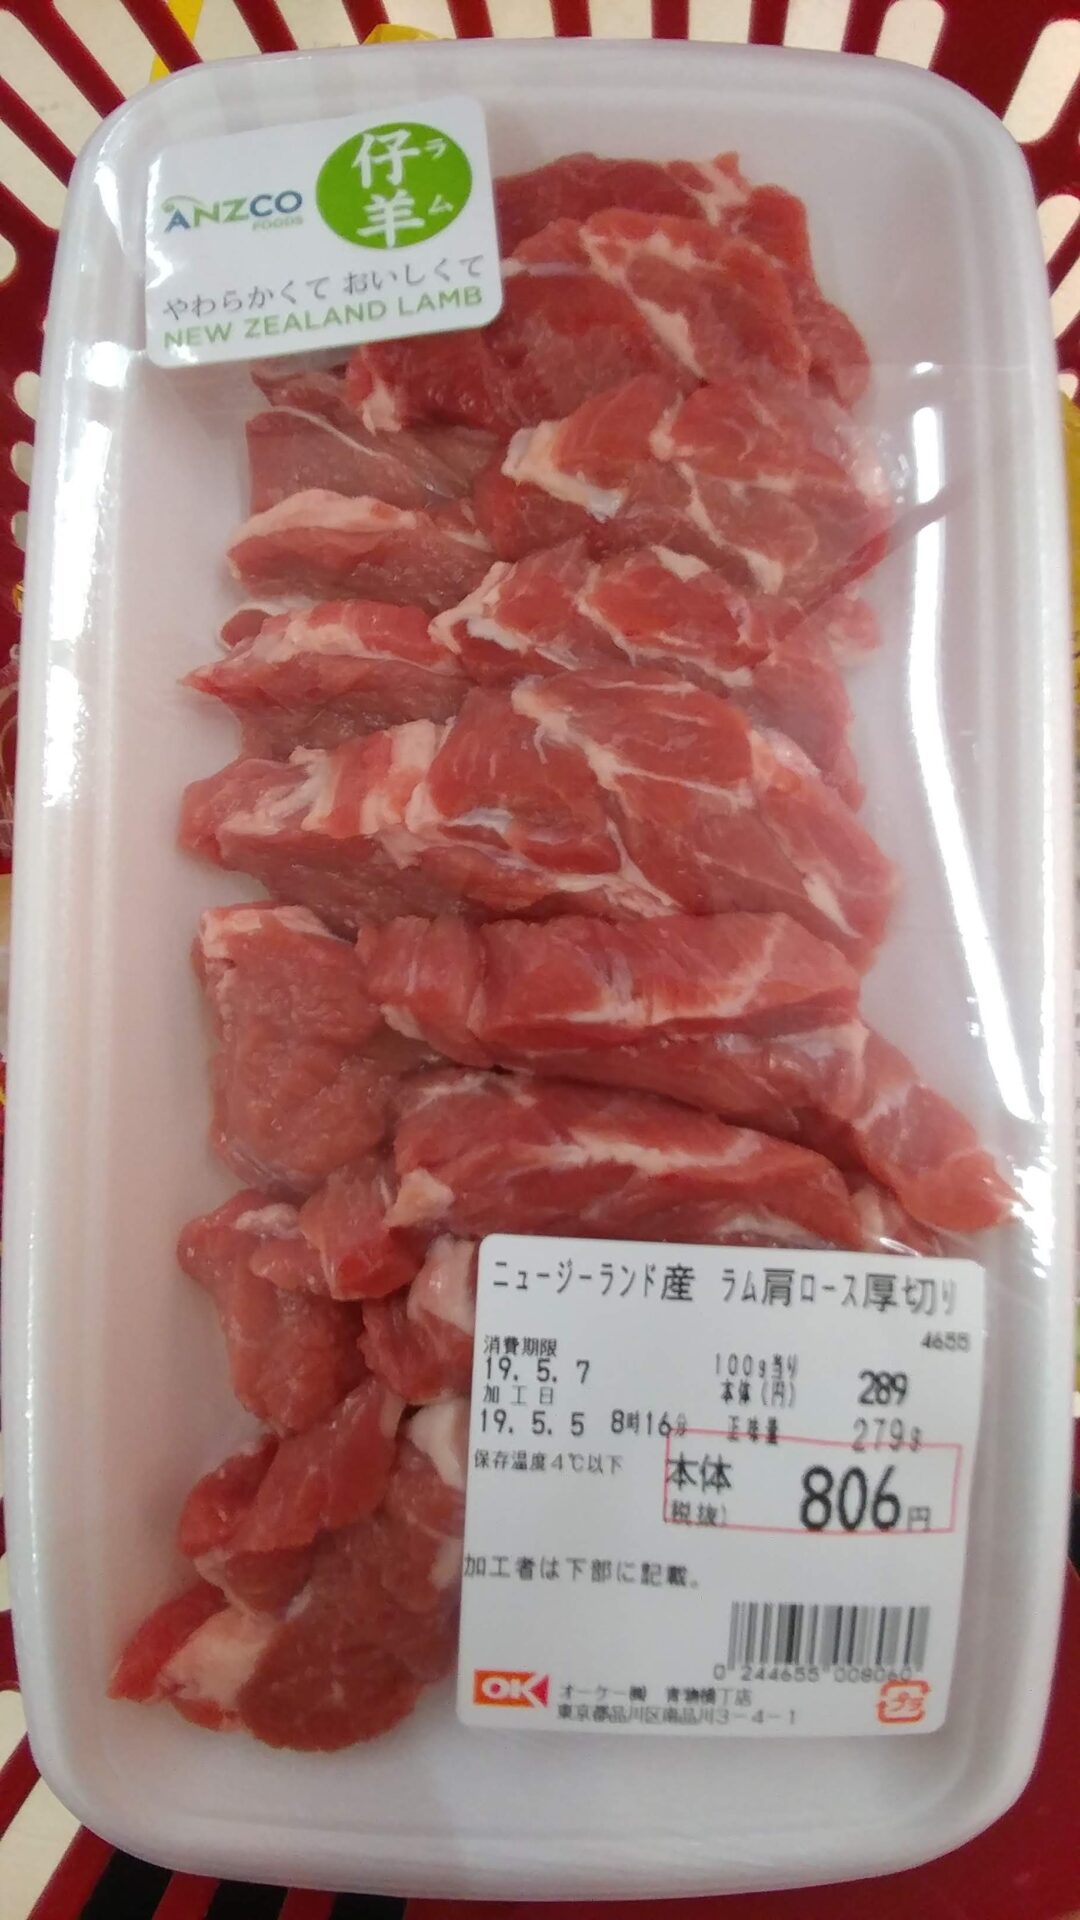 東京や関東近郊で販売されているラム肉ランキング 自宅でジンギスカンができます | SEの徒然旅ブログ